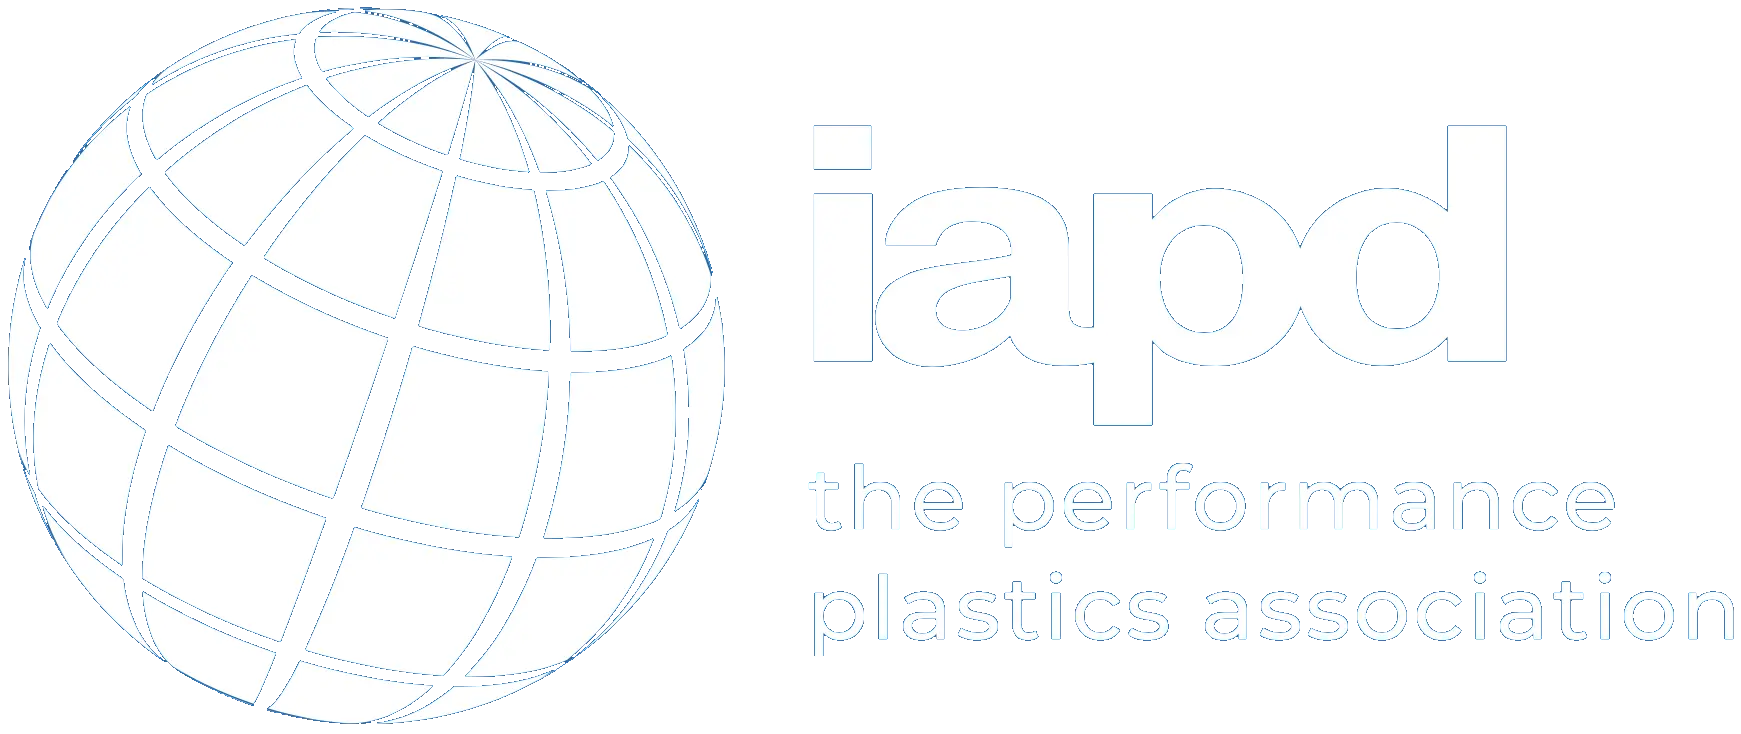 IAPD logo